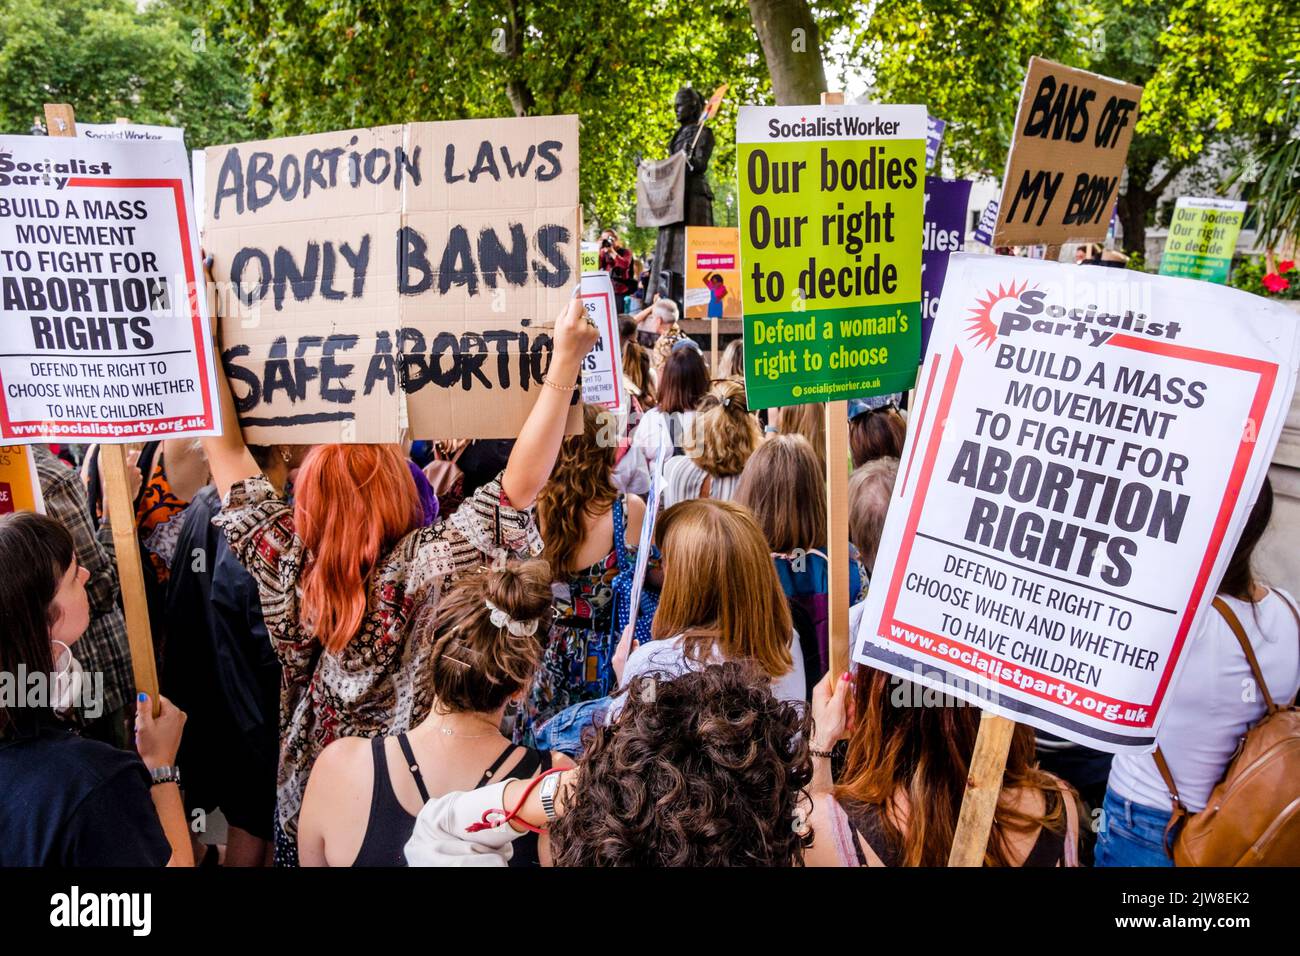 Londres, Reino Unido. 3 de septiembre de 2022. Los activistas pro-elección del aborto muestran mensajes sobre los derechos de las mujeres a elegir durante una marcha por elección en la Plaza del Parlamento en oposición a una manifestación que también está llevando a cabo grupos de campaña contra el aborto. Foto de stock